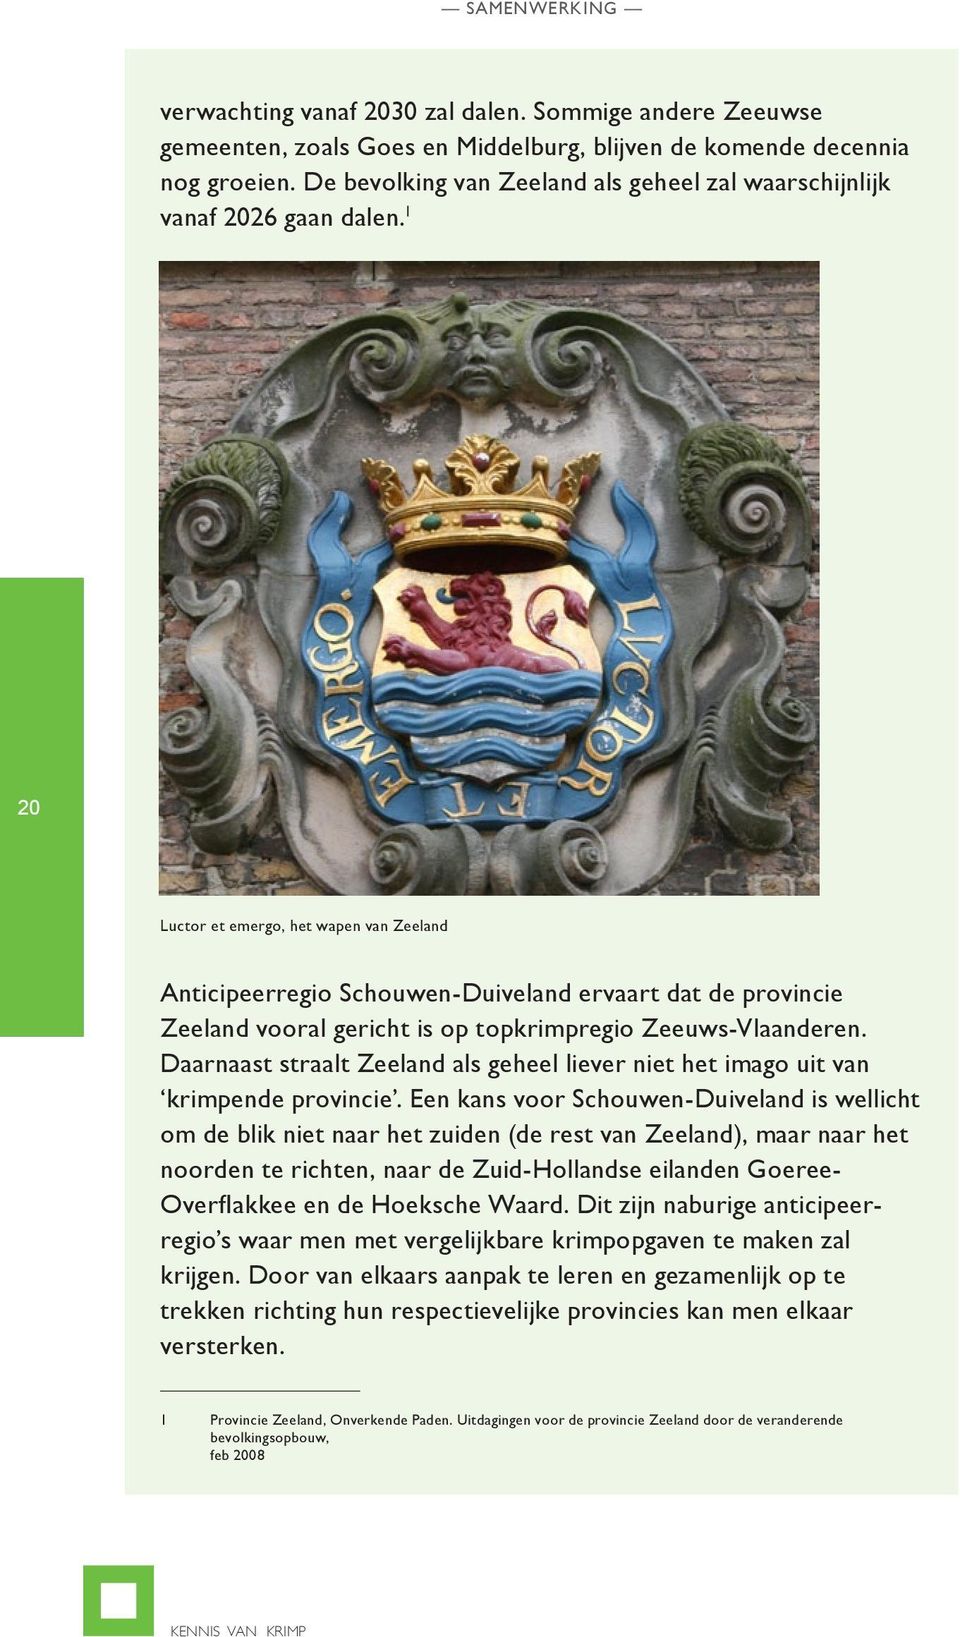 1 20 Luctor et emergo, het wapen van Zeeland Anticipeerregio Schouwen-Duiveland ervaart dat de provincie Zeeland vooral gericht is op topkrimpregio Zeeuws-Vlaanderen.